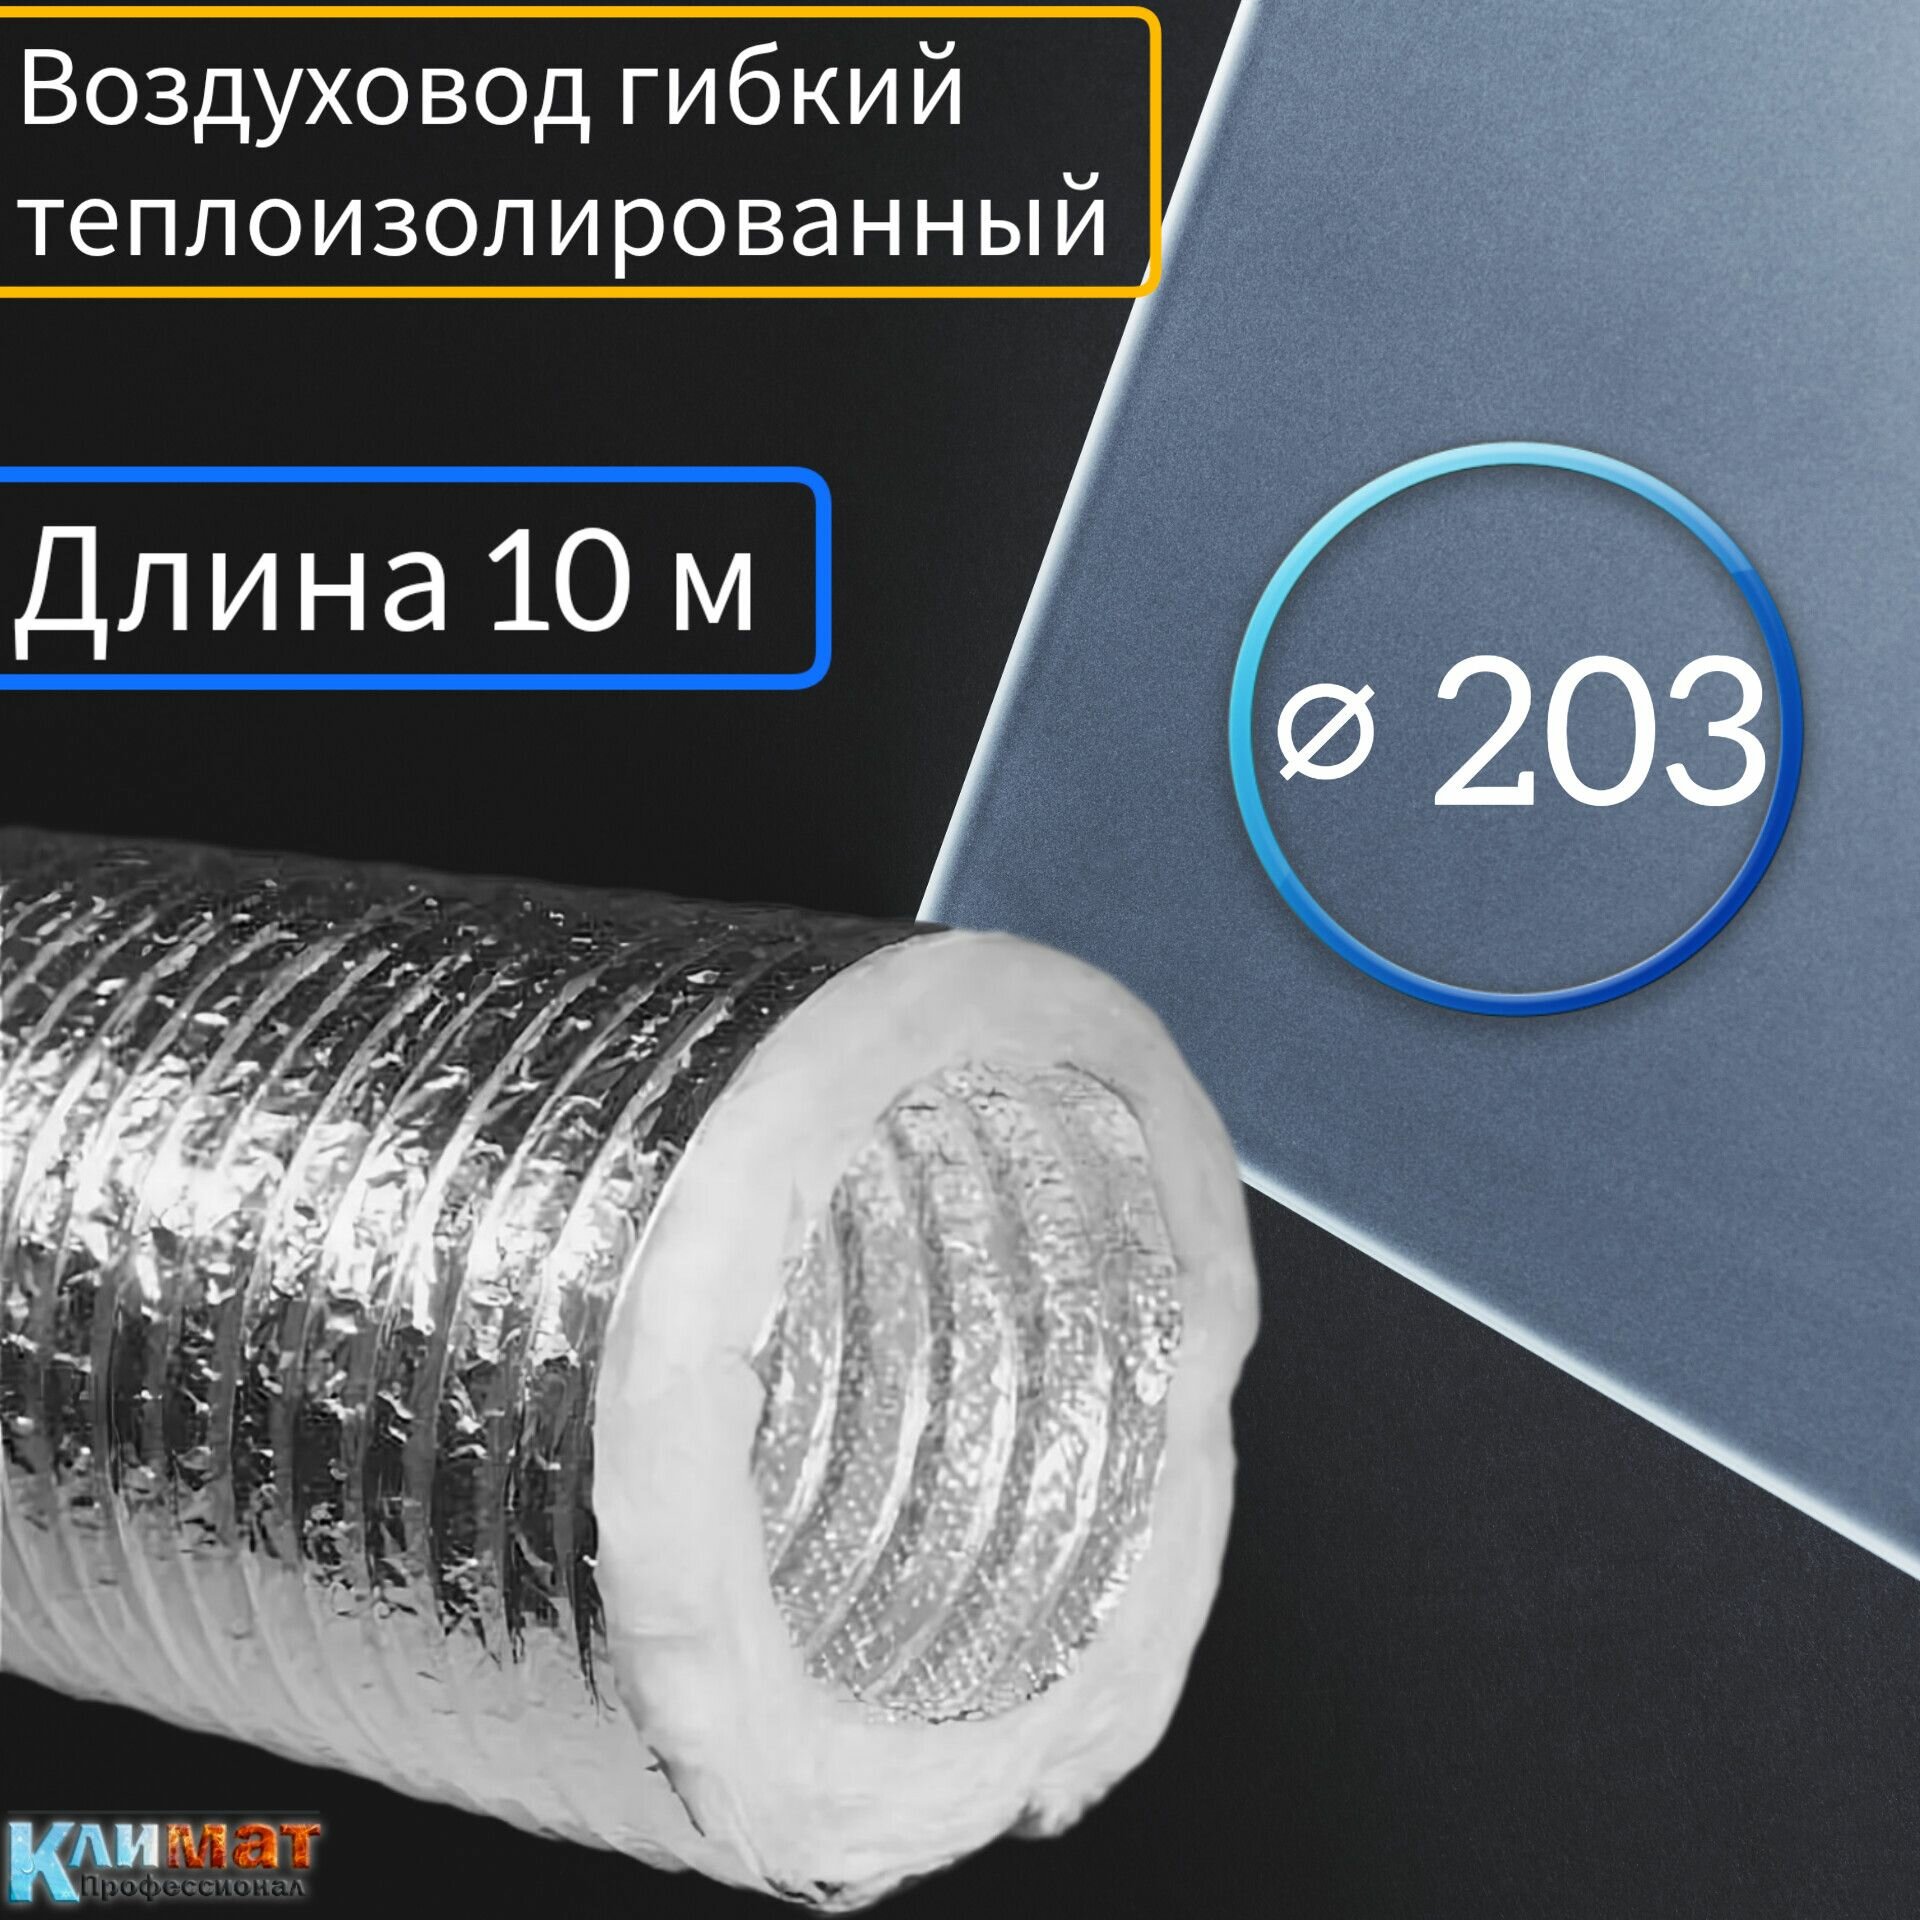 Воздуховод гибкий теплоизолированный ф203 для вентиляции (10м)